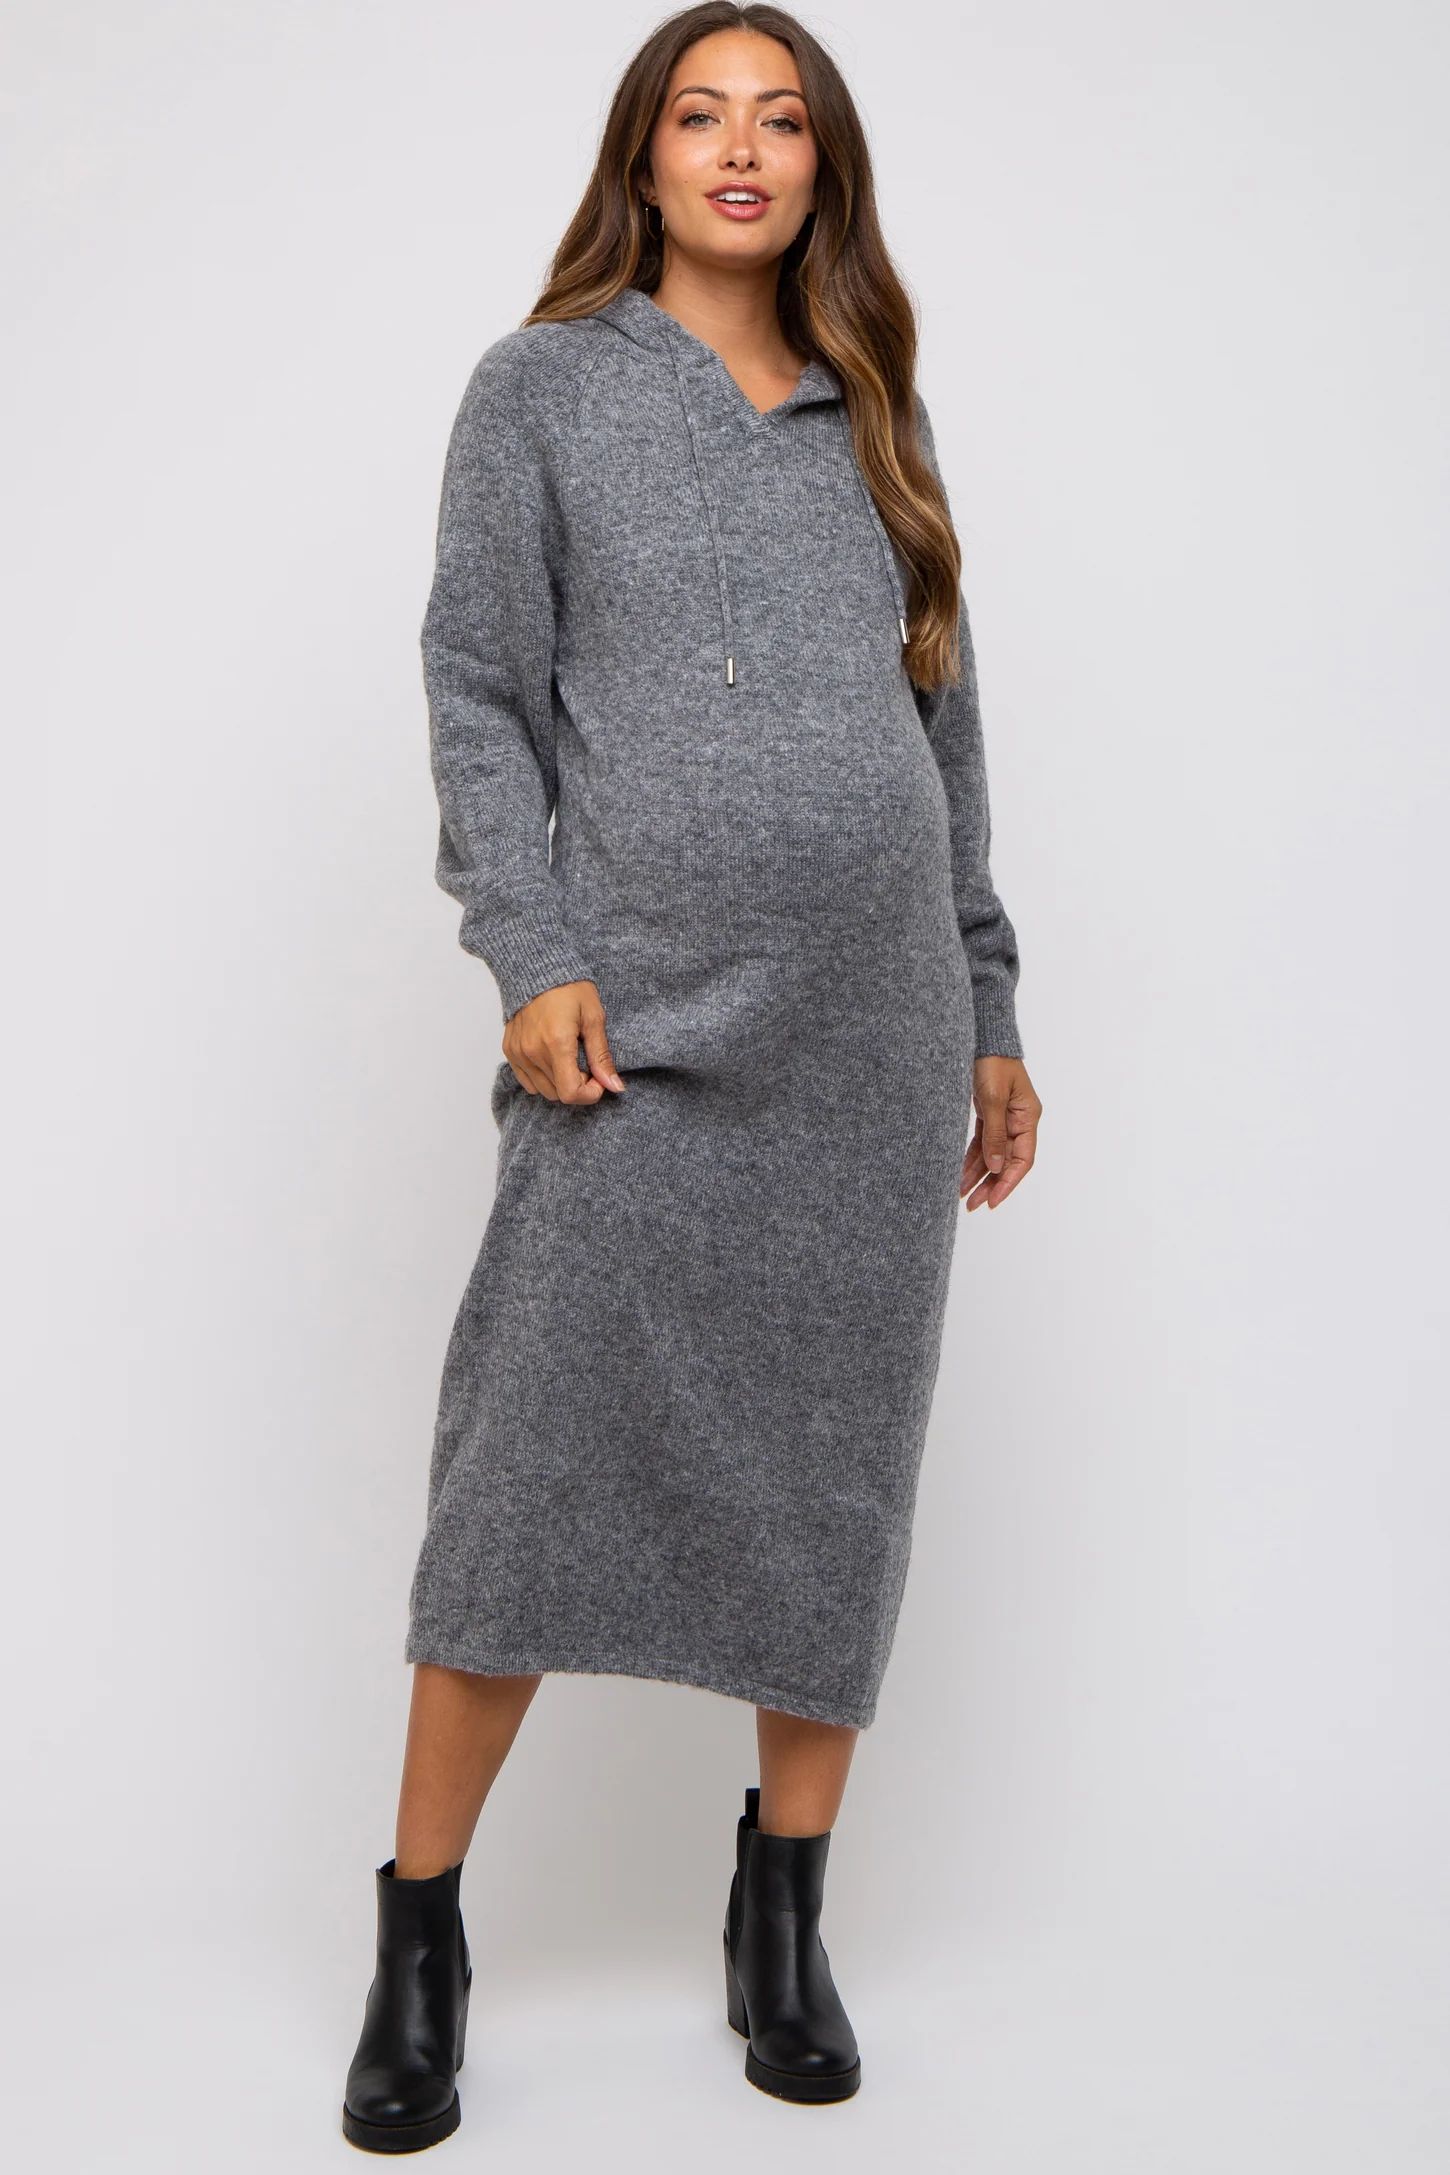 Charcoal Grey Hooded Maternity Sweater Midi Dress | PinkBlush Maternity